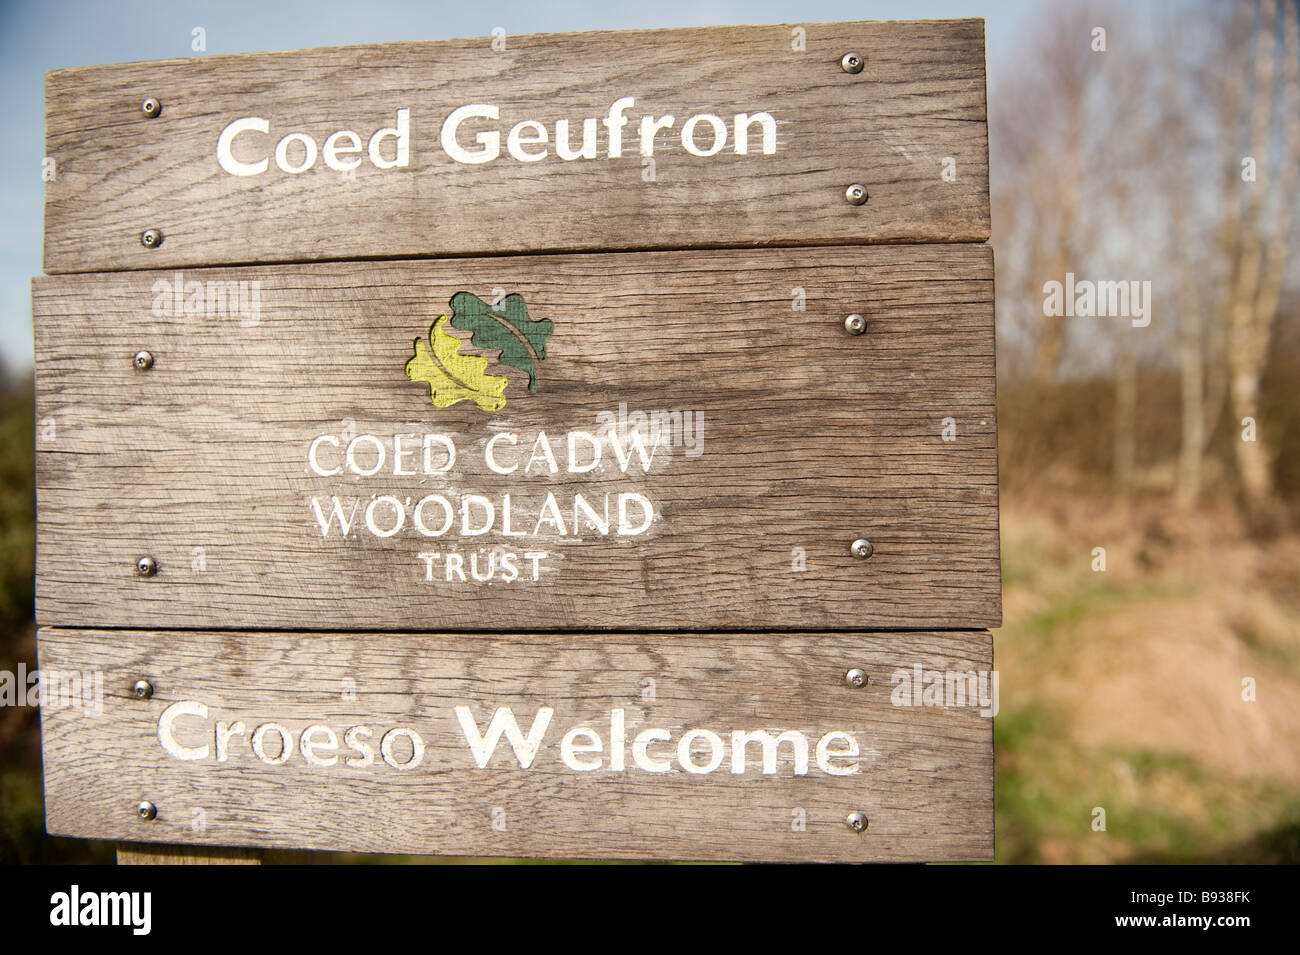 zweisprachige walisische englische Zeichen im Coed Geufron Wald Vertrauen Naturreservat Ceredigion Wales UK Stockfoto